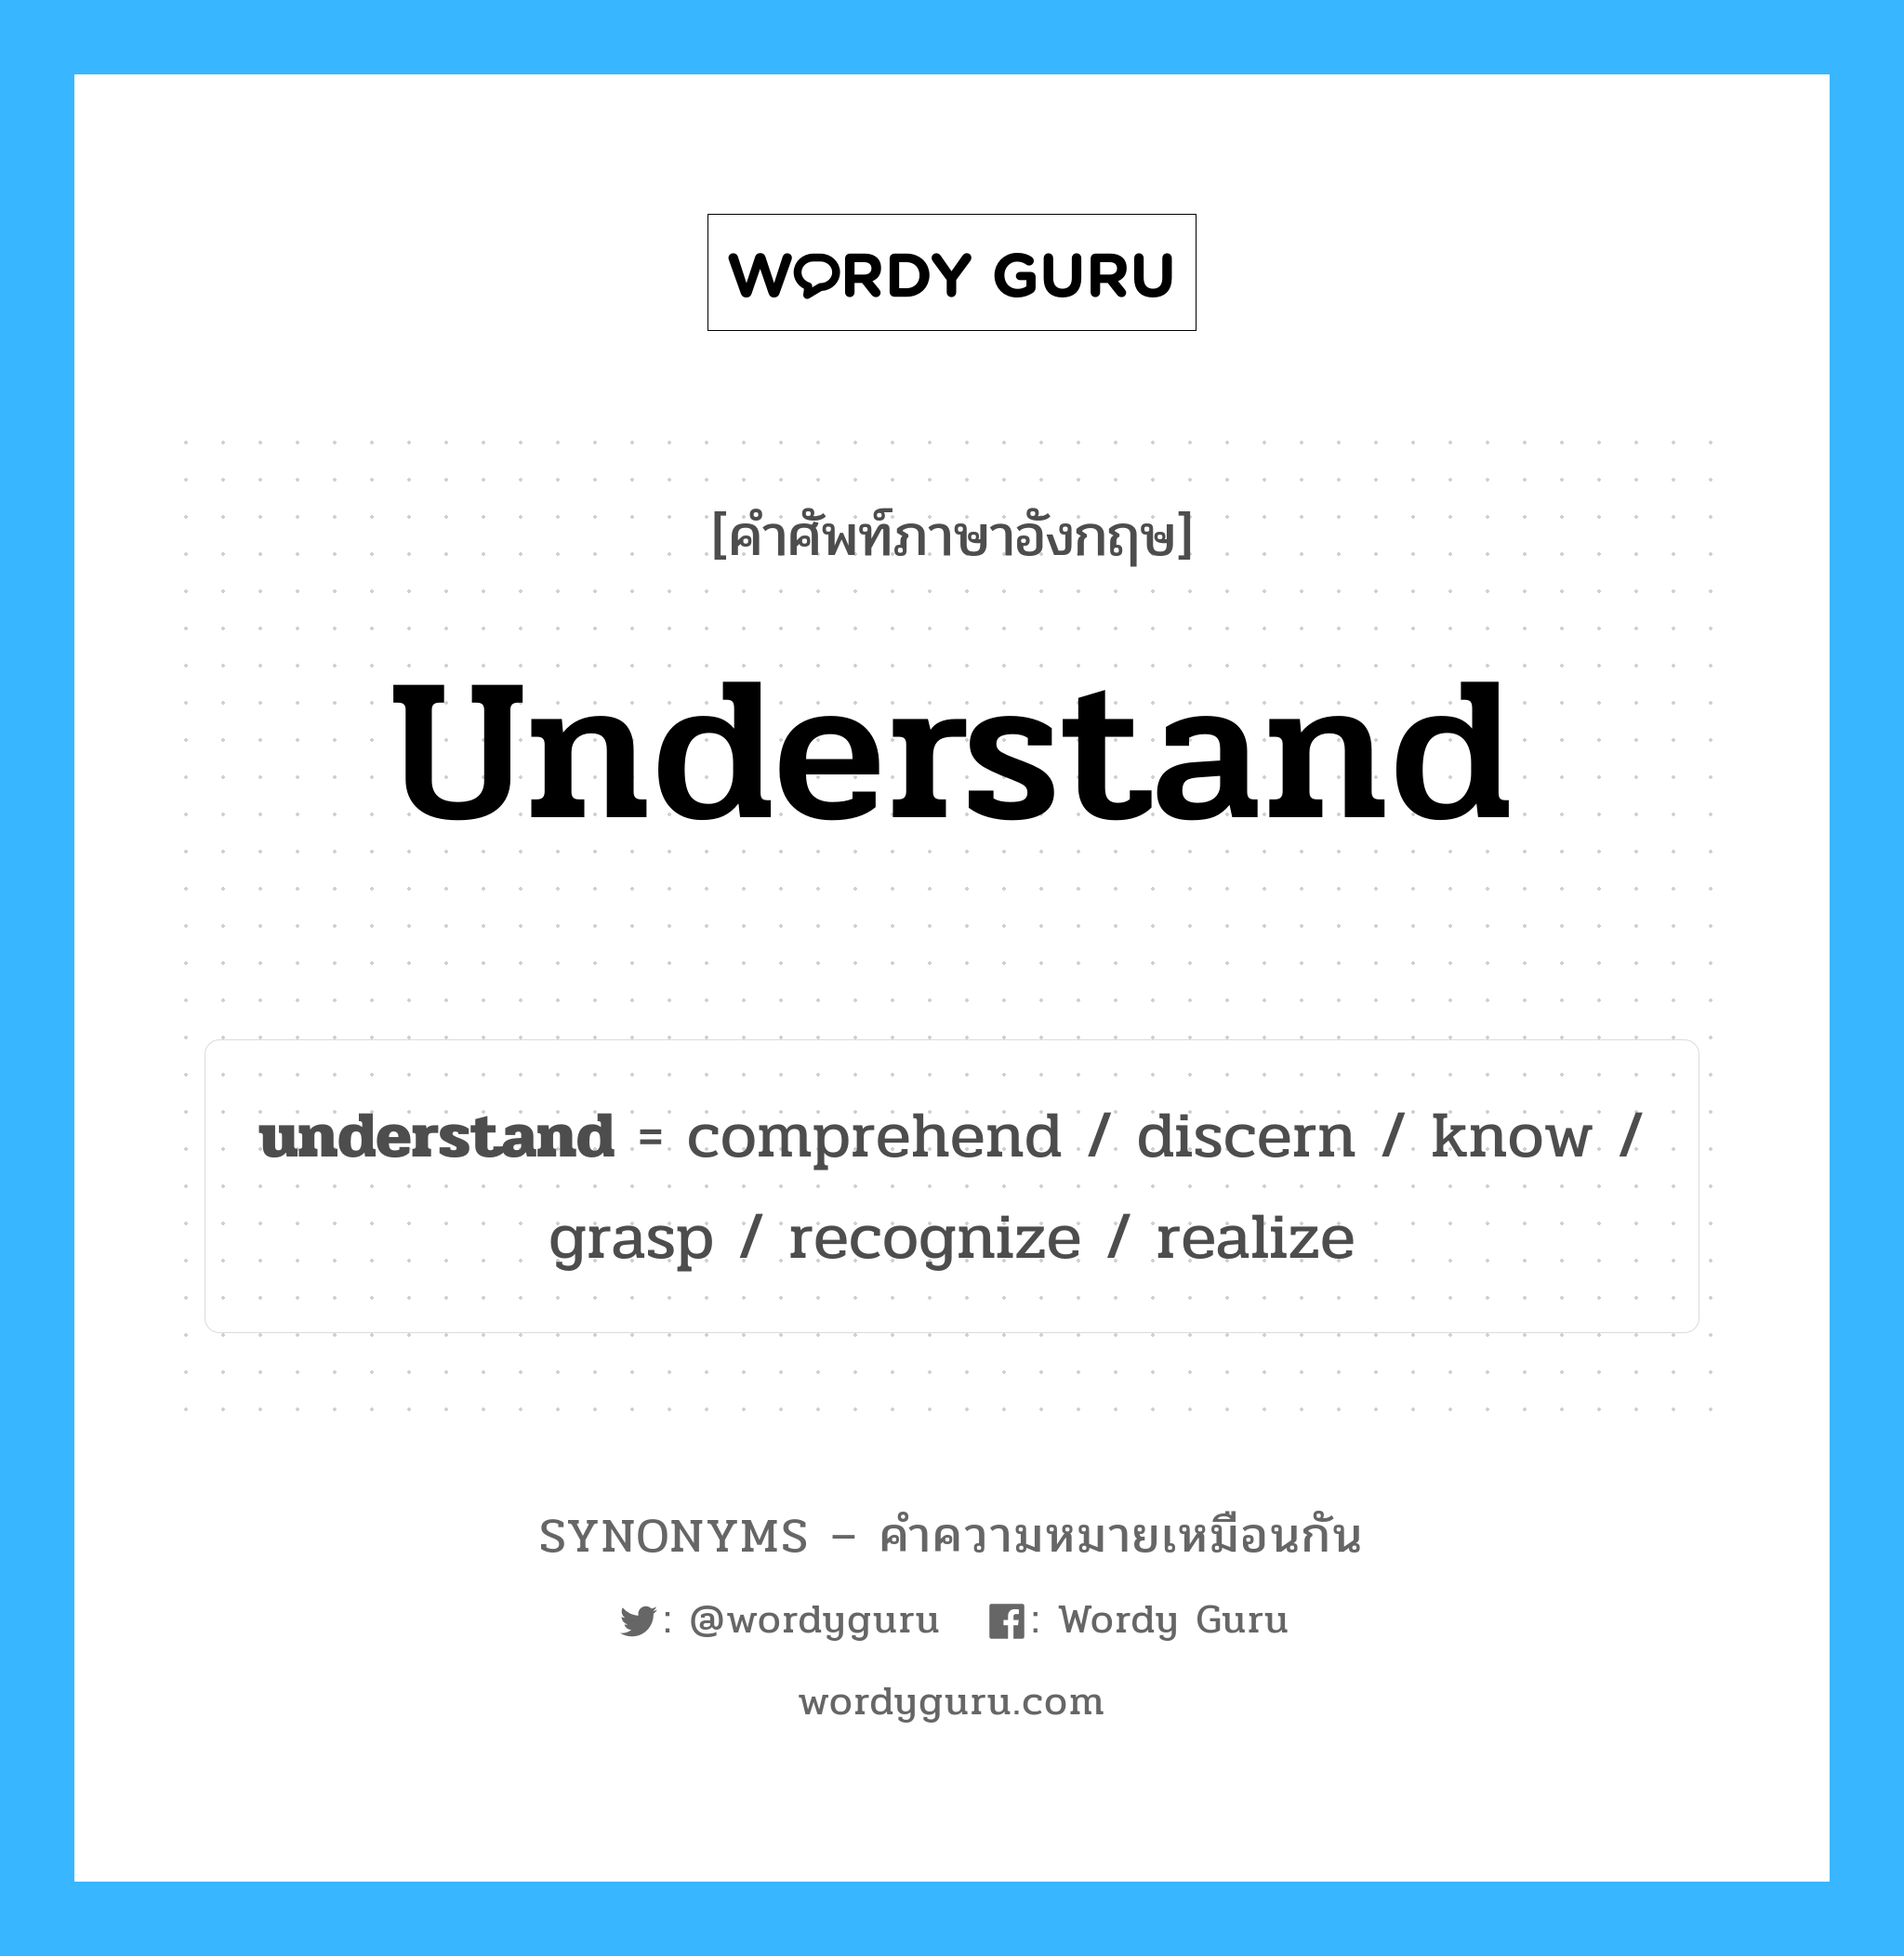 realize เป็นหนึ่งใน understand และมีคำอื่น ๆ อีกดังนี้, คำศัพท์ภาษาอังกฤษ realize ความหมายคล้ายกันกับ understand แปลว่า ตระหนักถึง หมวด understand